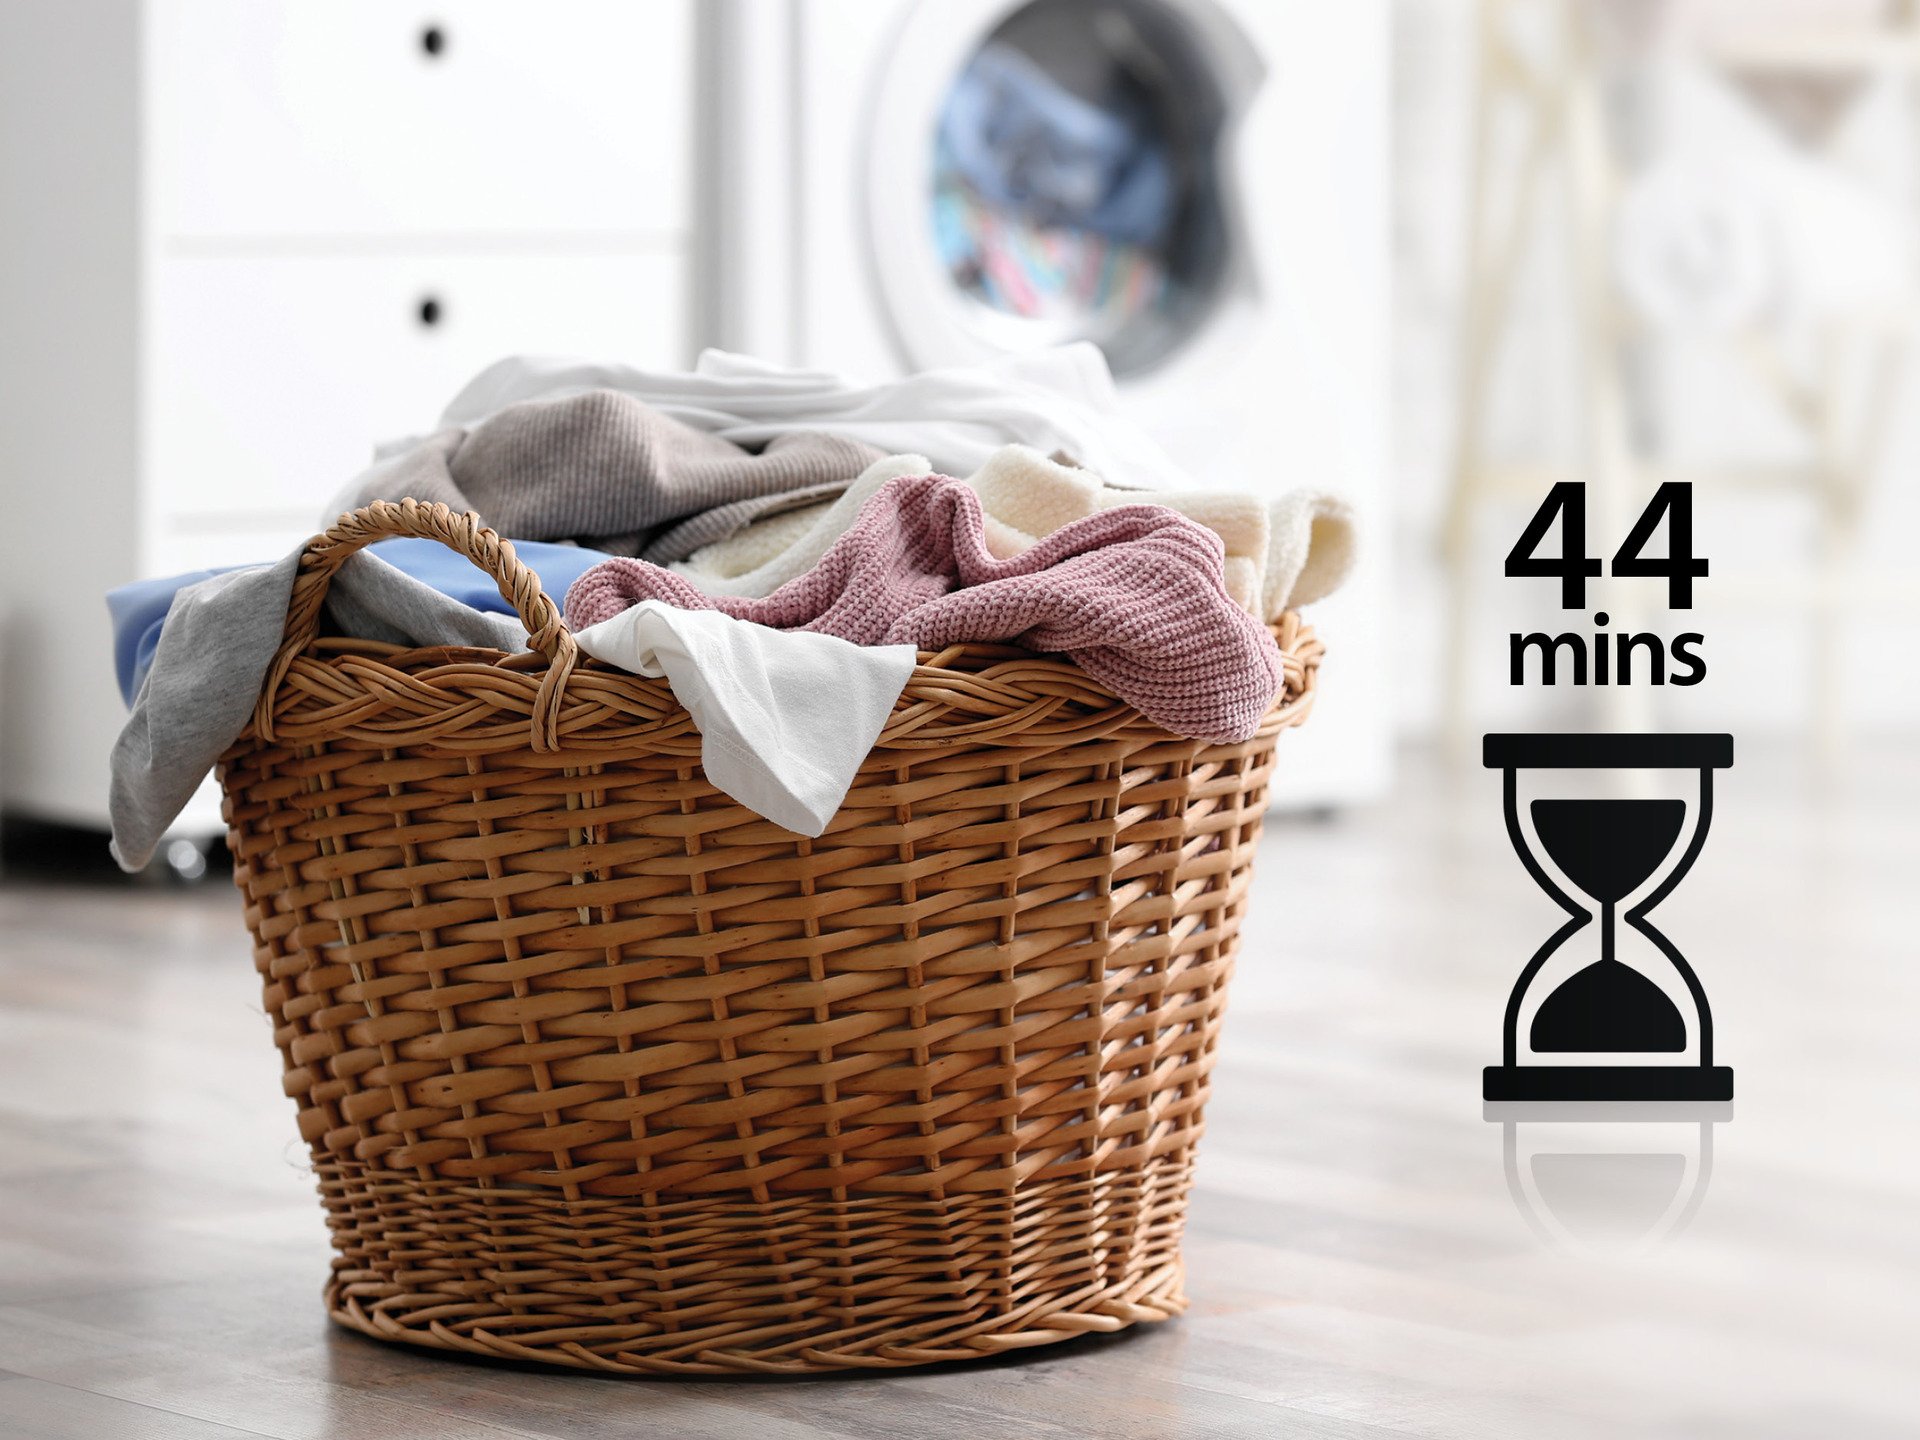 Máy giặt whirlpool giặt nhanh 44 phút